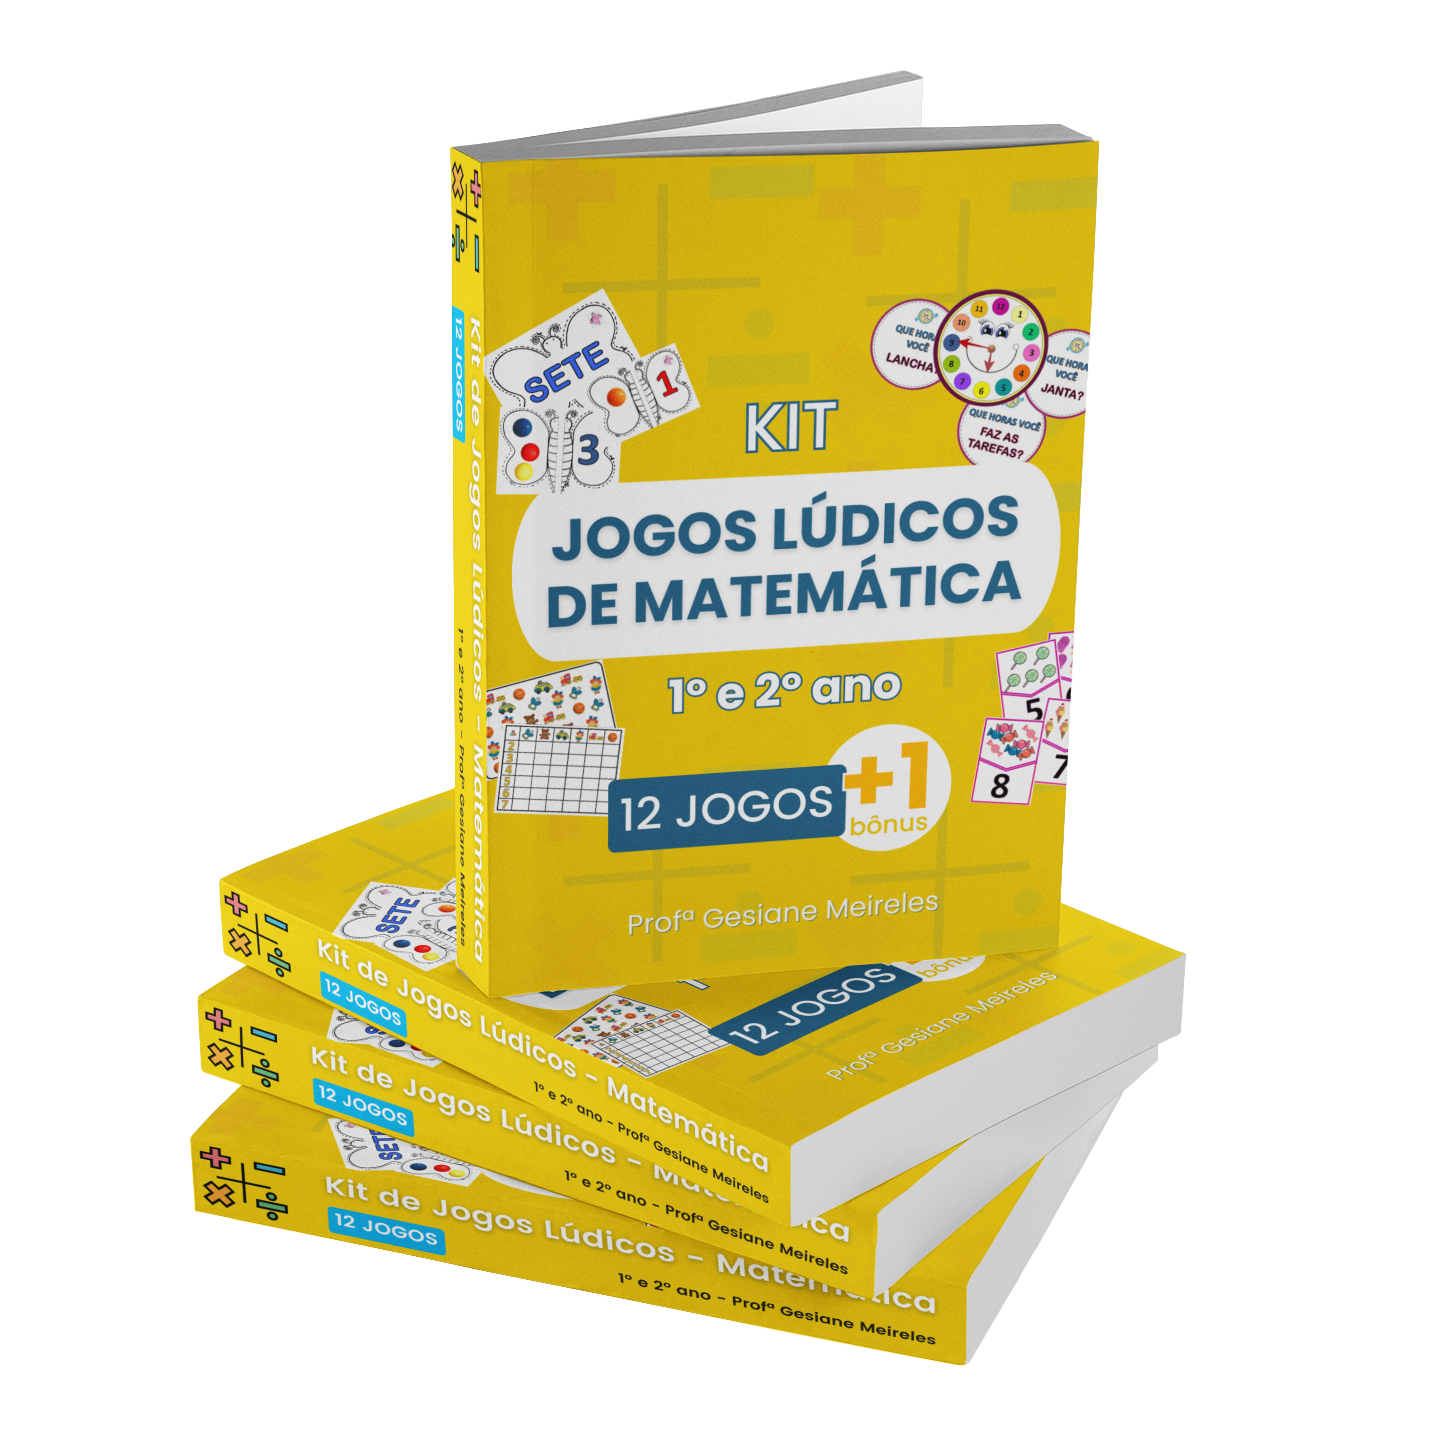 12 JOGOS] Kit de Jogos Lúdicos Matemática - 1º e 2º ano